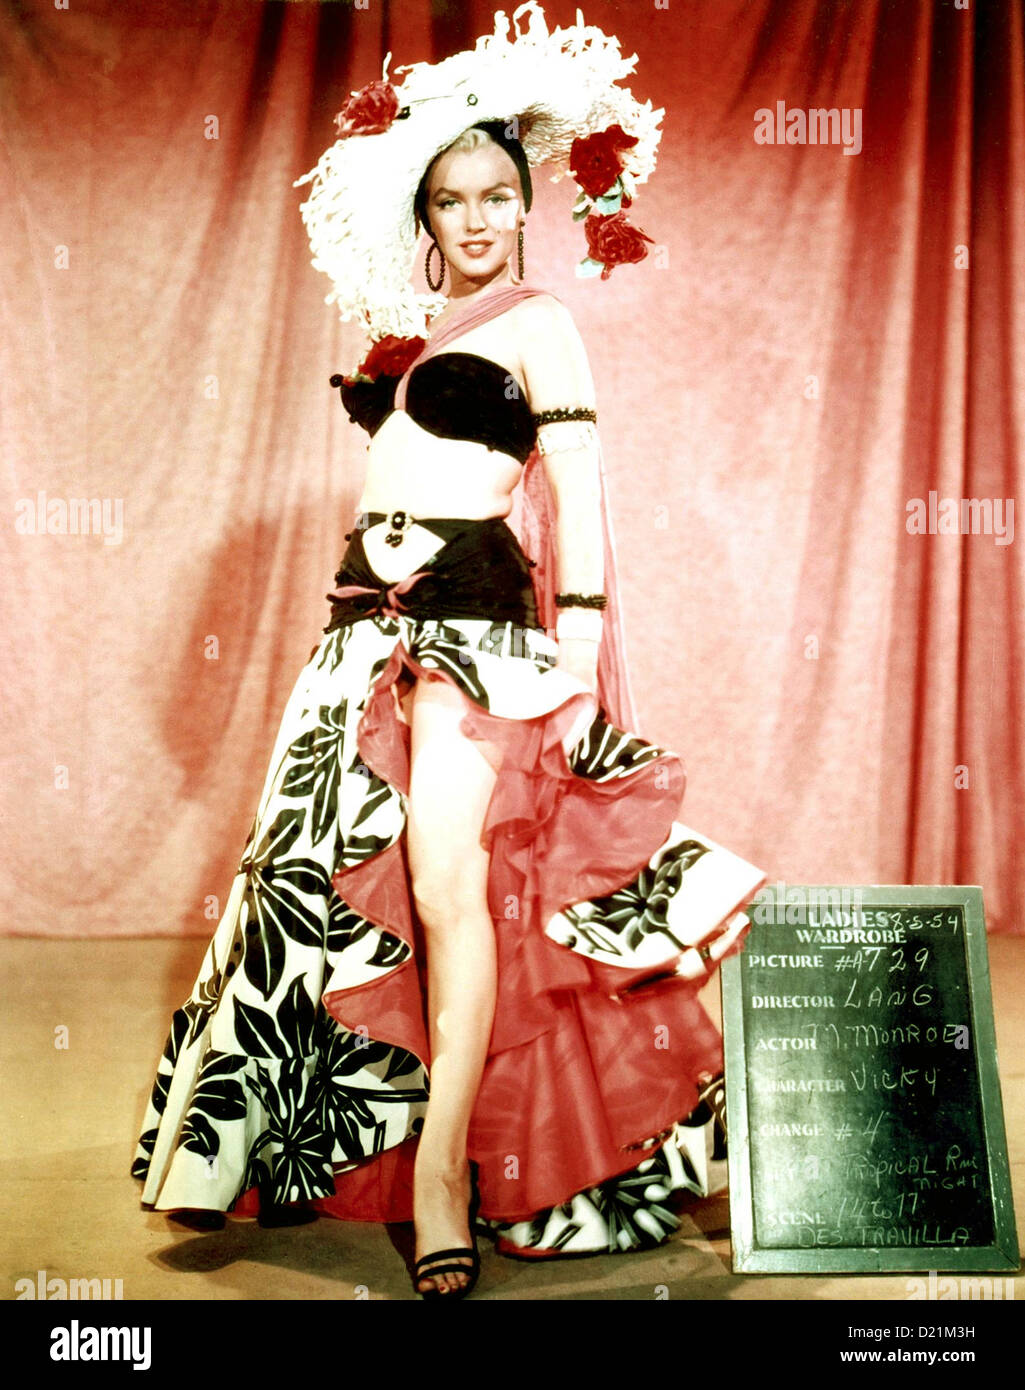 Marilyn monroe costume immagini e fotografie stock ad alta risoluzione -  Alamy